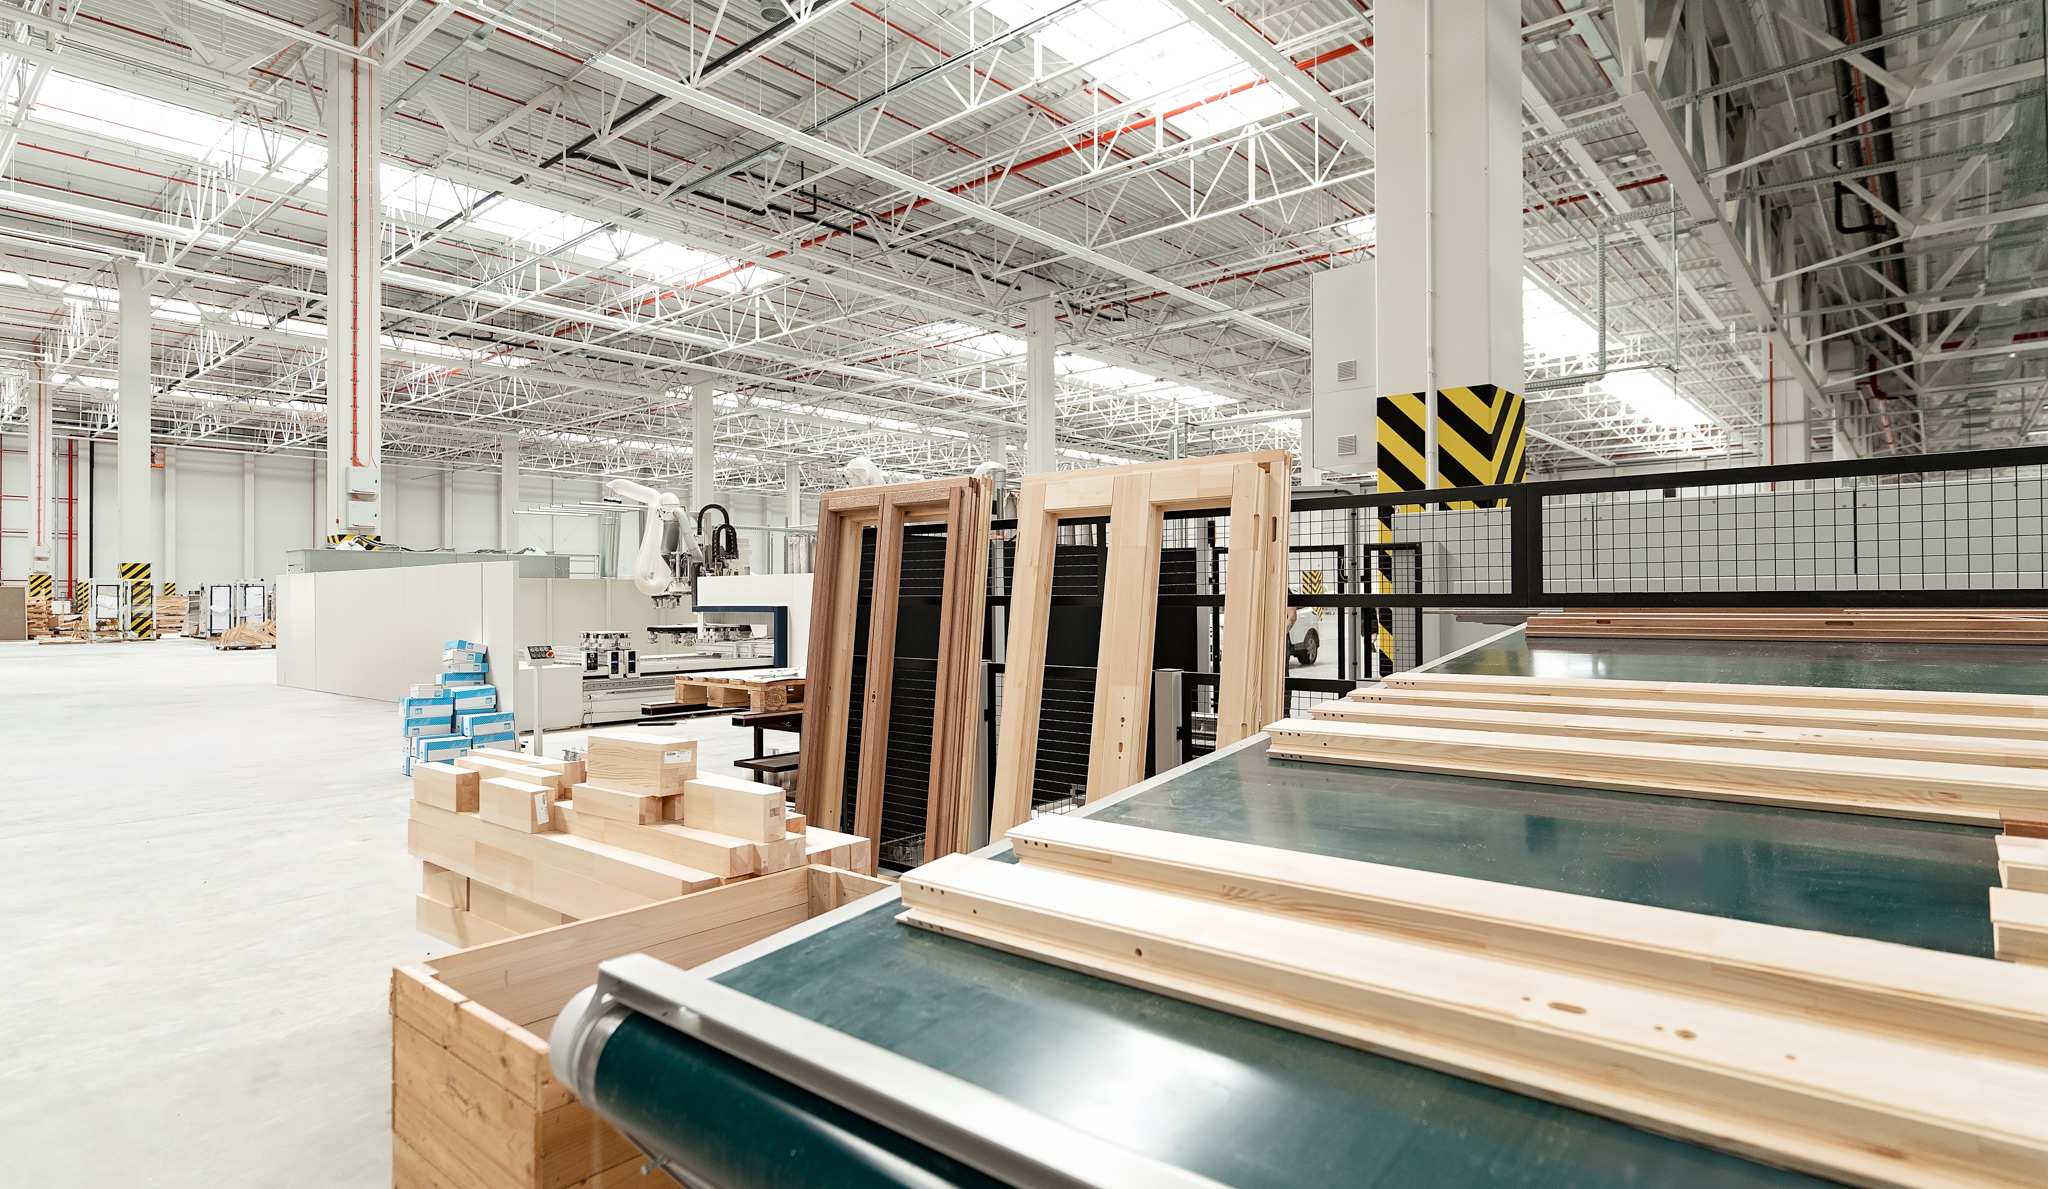 Nel mese di luglio, abbiamo inaugurato uno stabilimento produttivo a Kędzierzyn-Koźle. Abbiamo aumentato le nostre capacità produttive – questa sede sarà specializzata nella produzione di falegnameria. Qui si trova anche un magazzino di travi in legno.